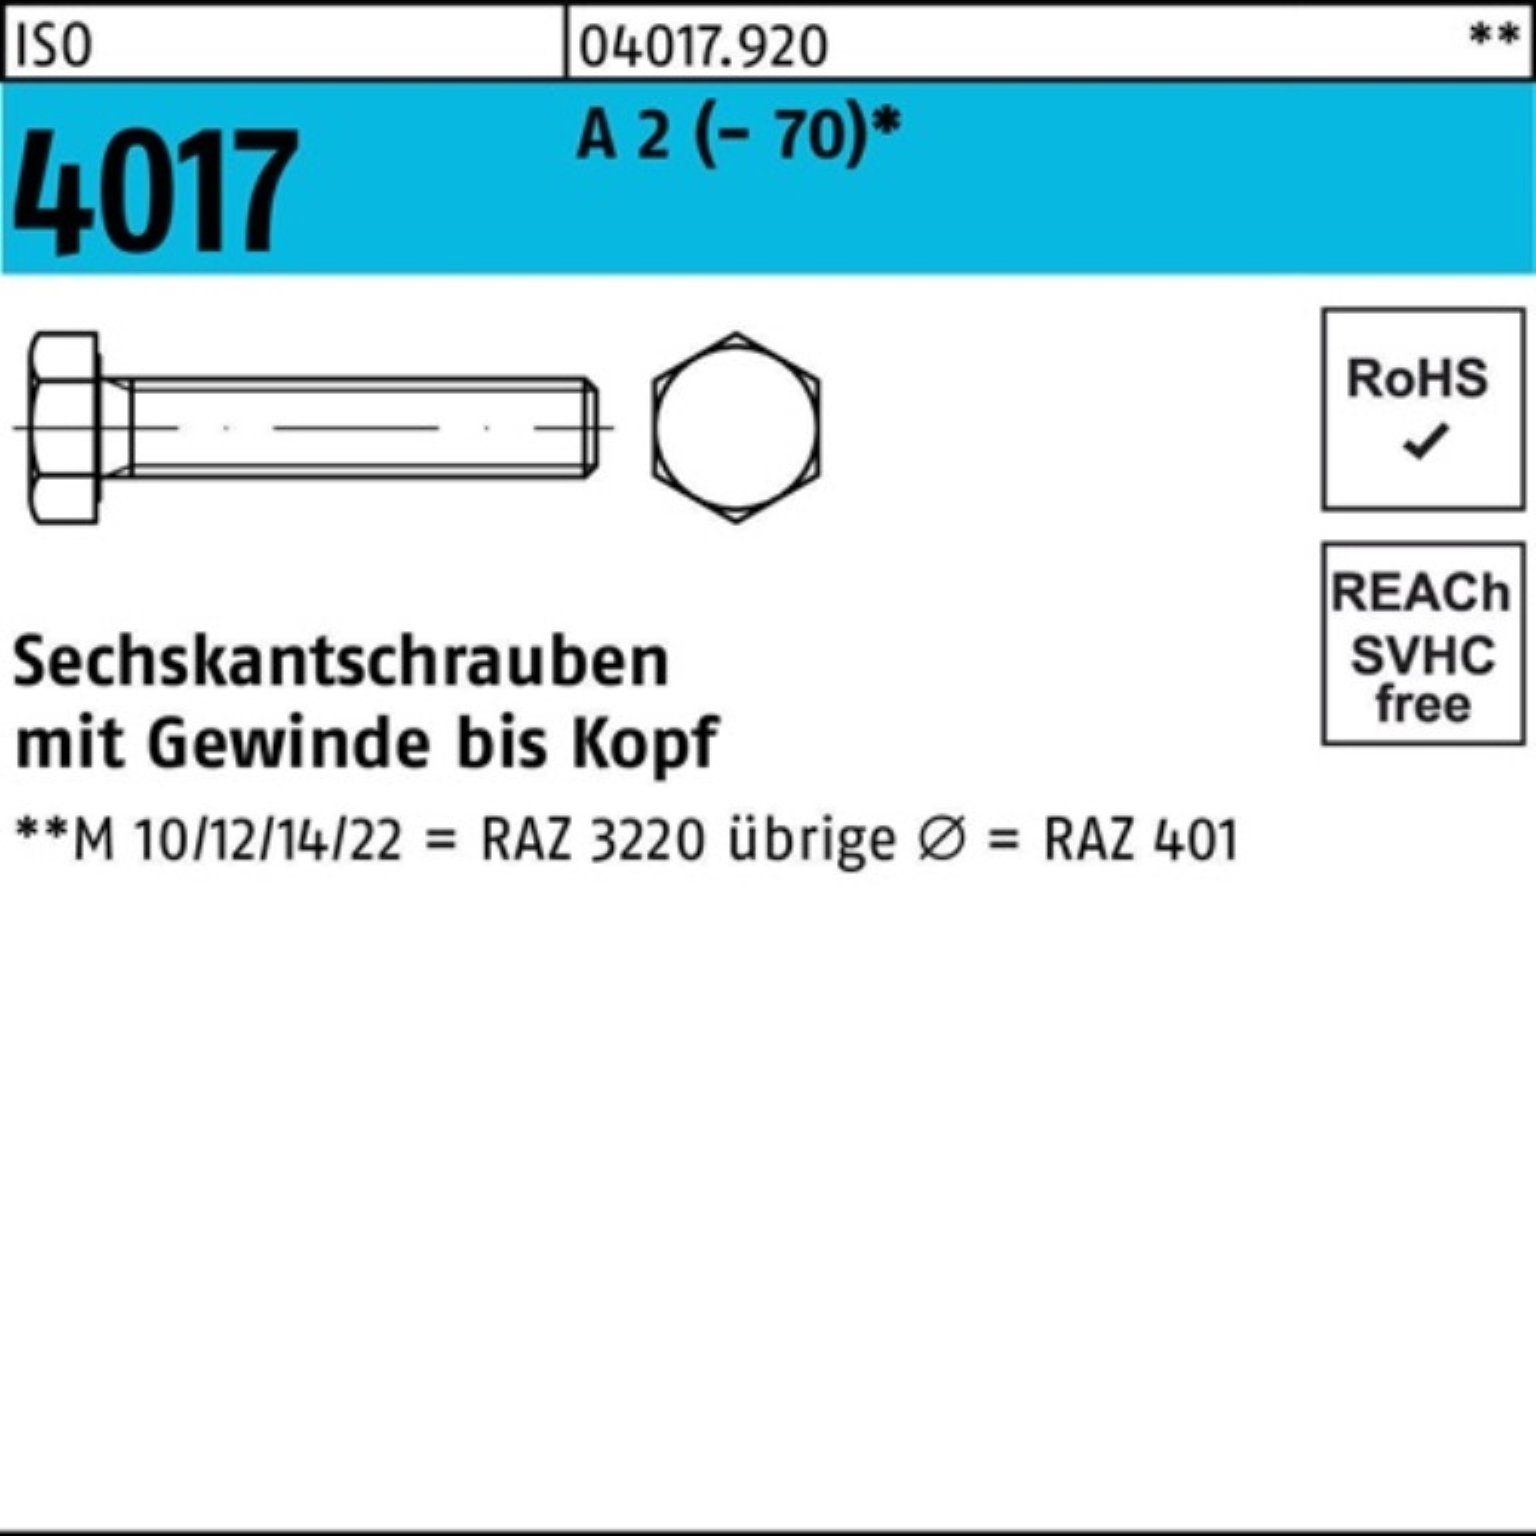 A (70) Bufab 2 ISO Sechskantschraube 100er Pack VG M4x 4017 14 100 Stück Sechskantschraube